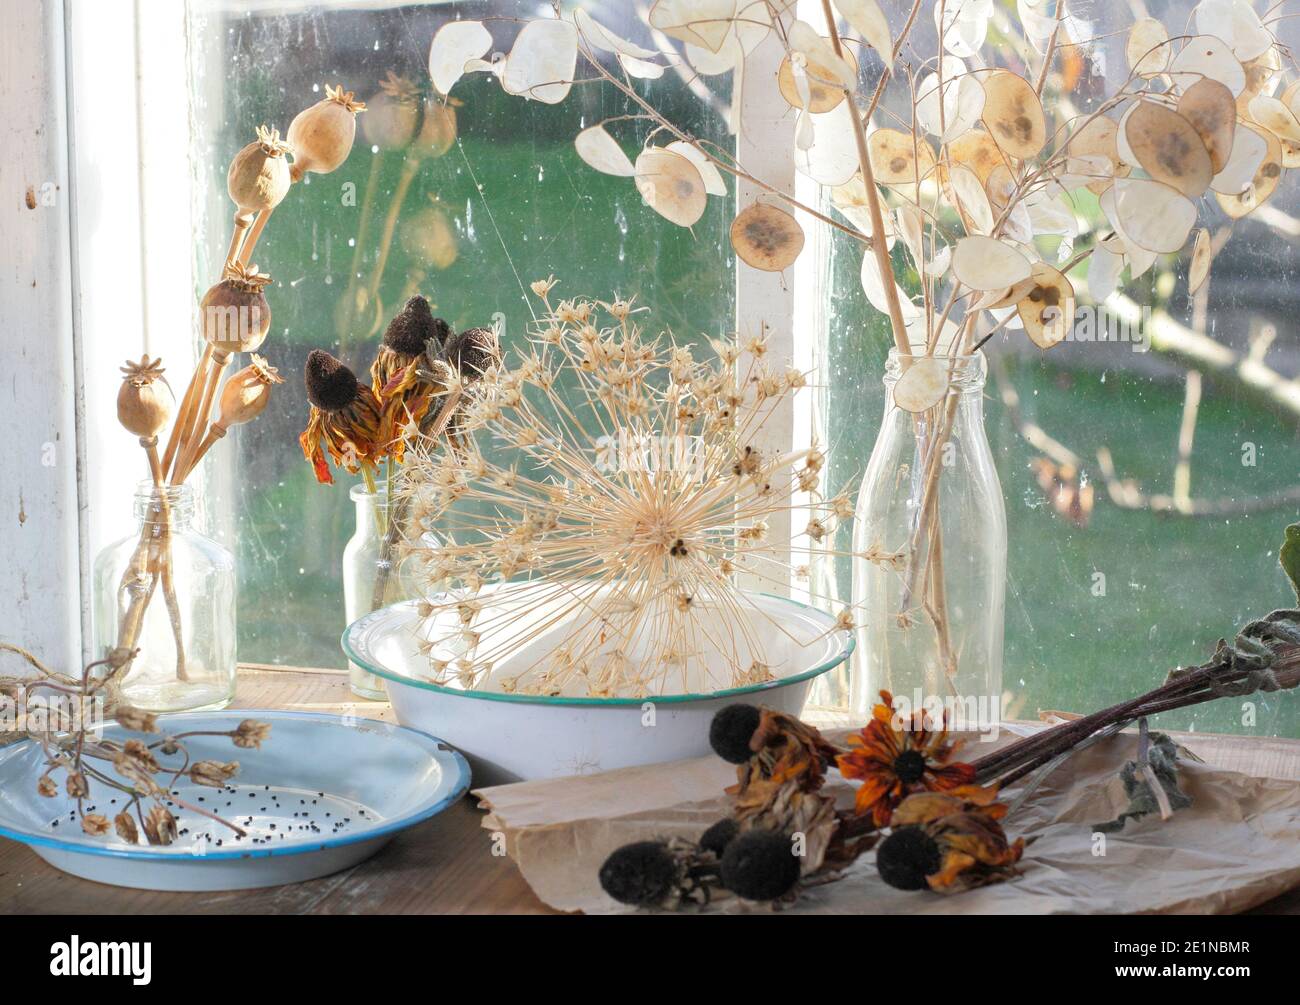 Secado de las cabezas de las semillas de flores en un soleado alféizar en otoño para el ahorro de semillas y propósitos decorativos. Honestidad, rudbeckia, aquilegia, allium y amapola. Foto de stock